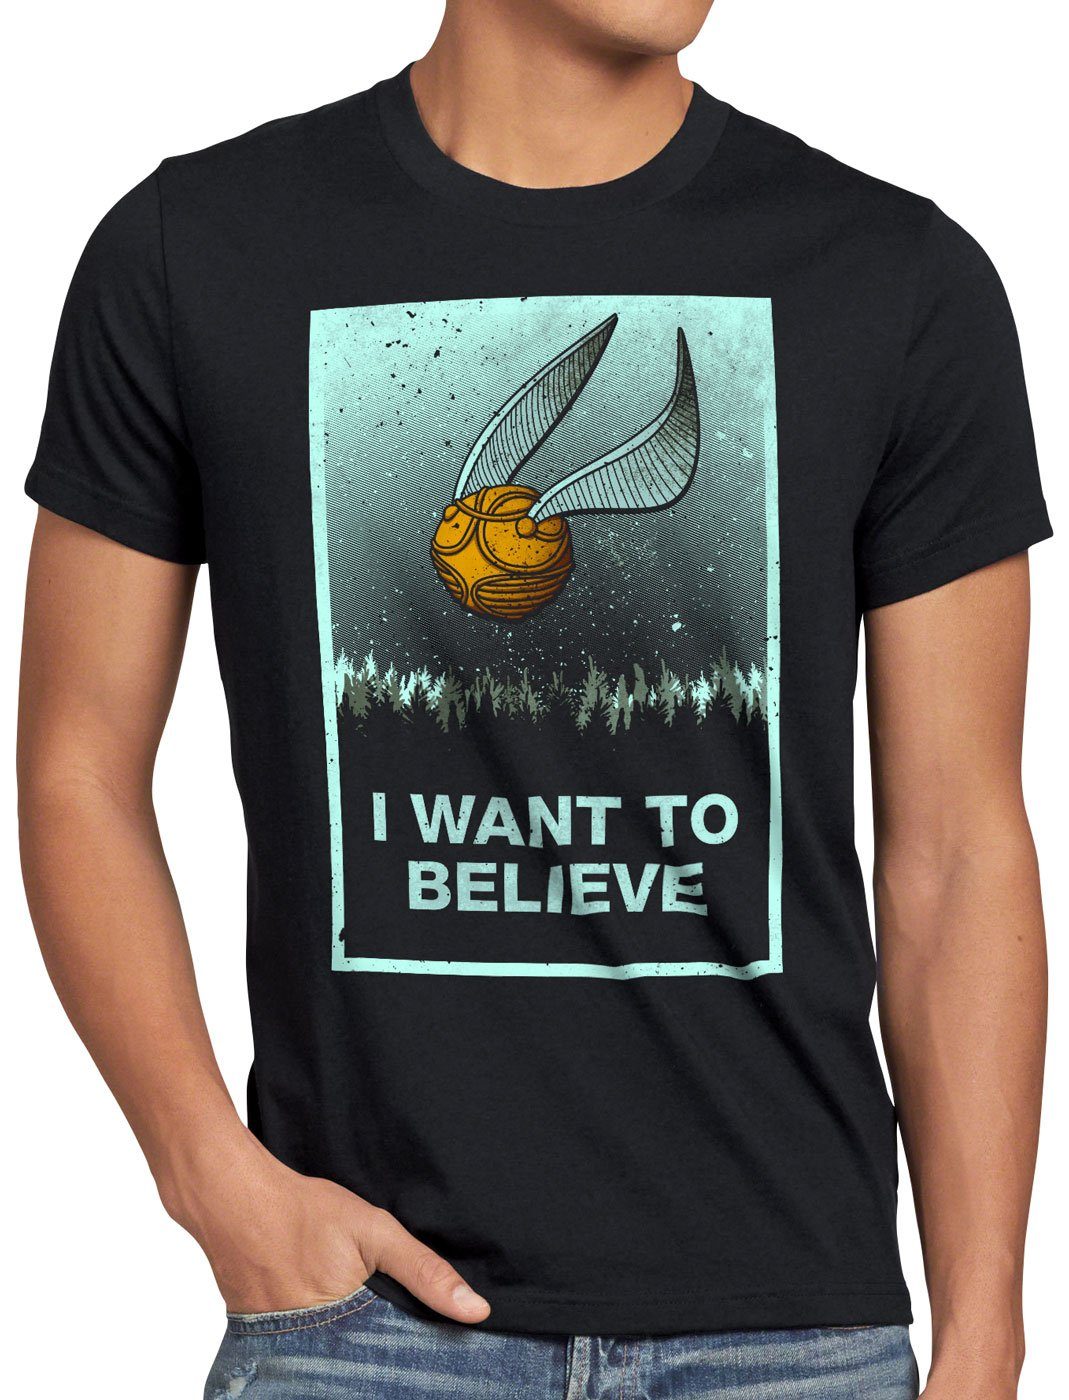 T-Shirt believe turnier style3 besen sport Print-Shirt Herren want to Schnatz I quidditch